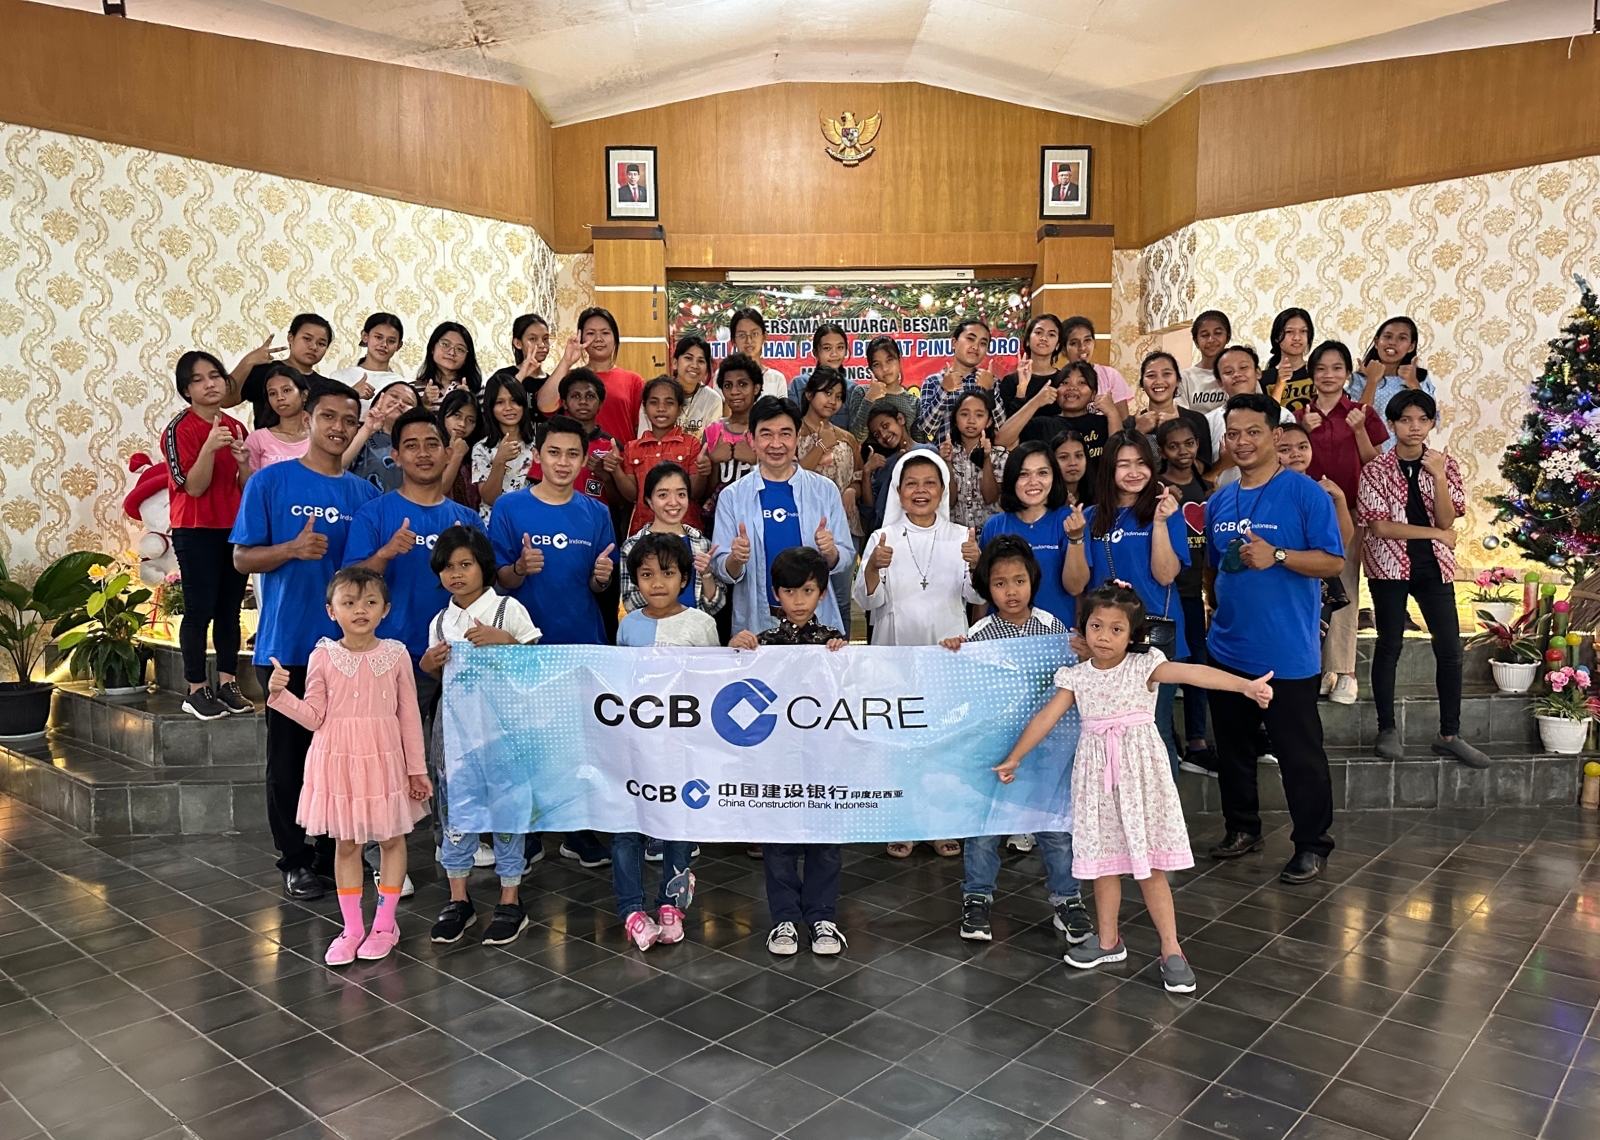 CCB Indonesia Care - Kunjungan Sosial ke Panti Asuhan Brayat Pinuji